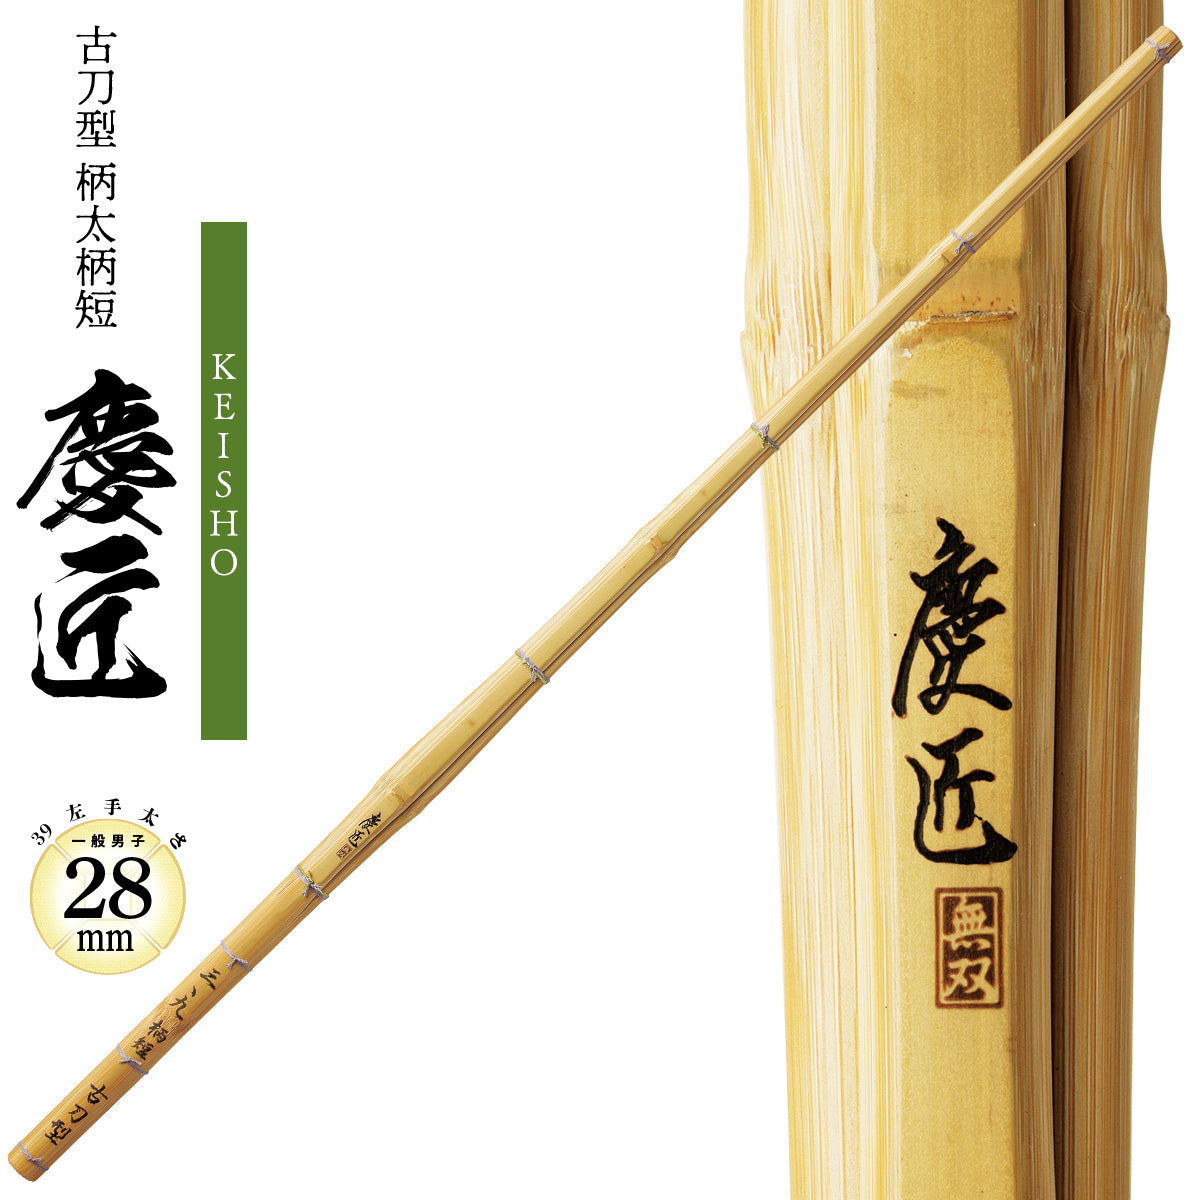 古刀型 柄太柄短 慶匠[K-30] – 西日本武道具